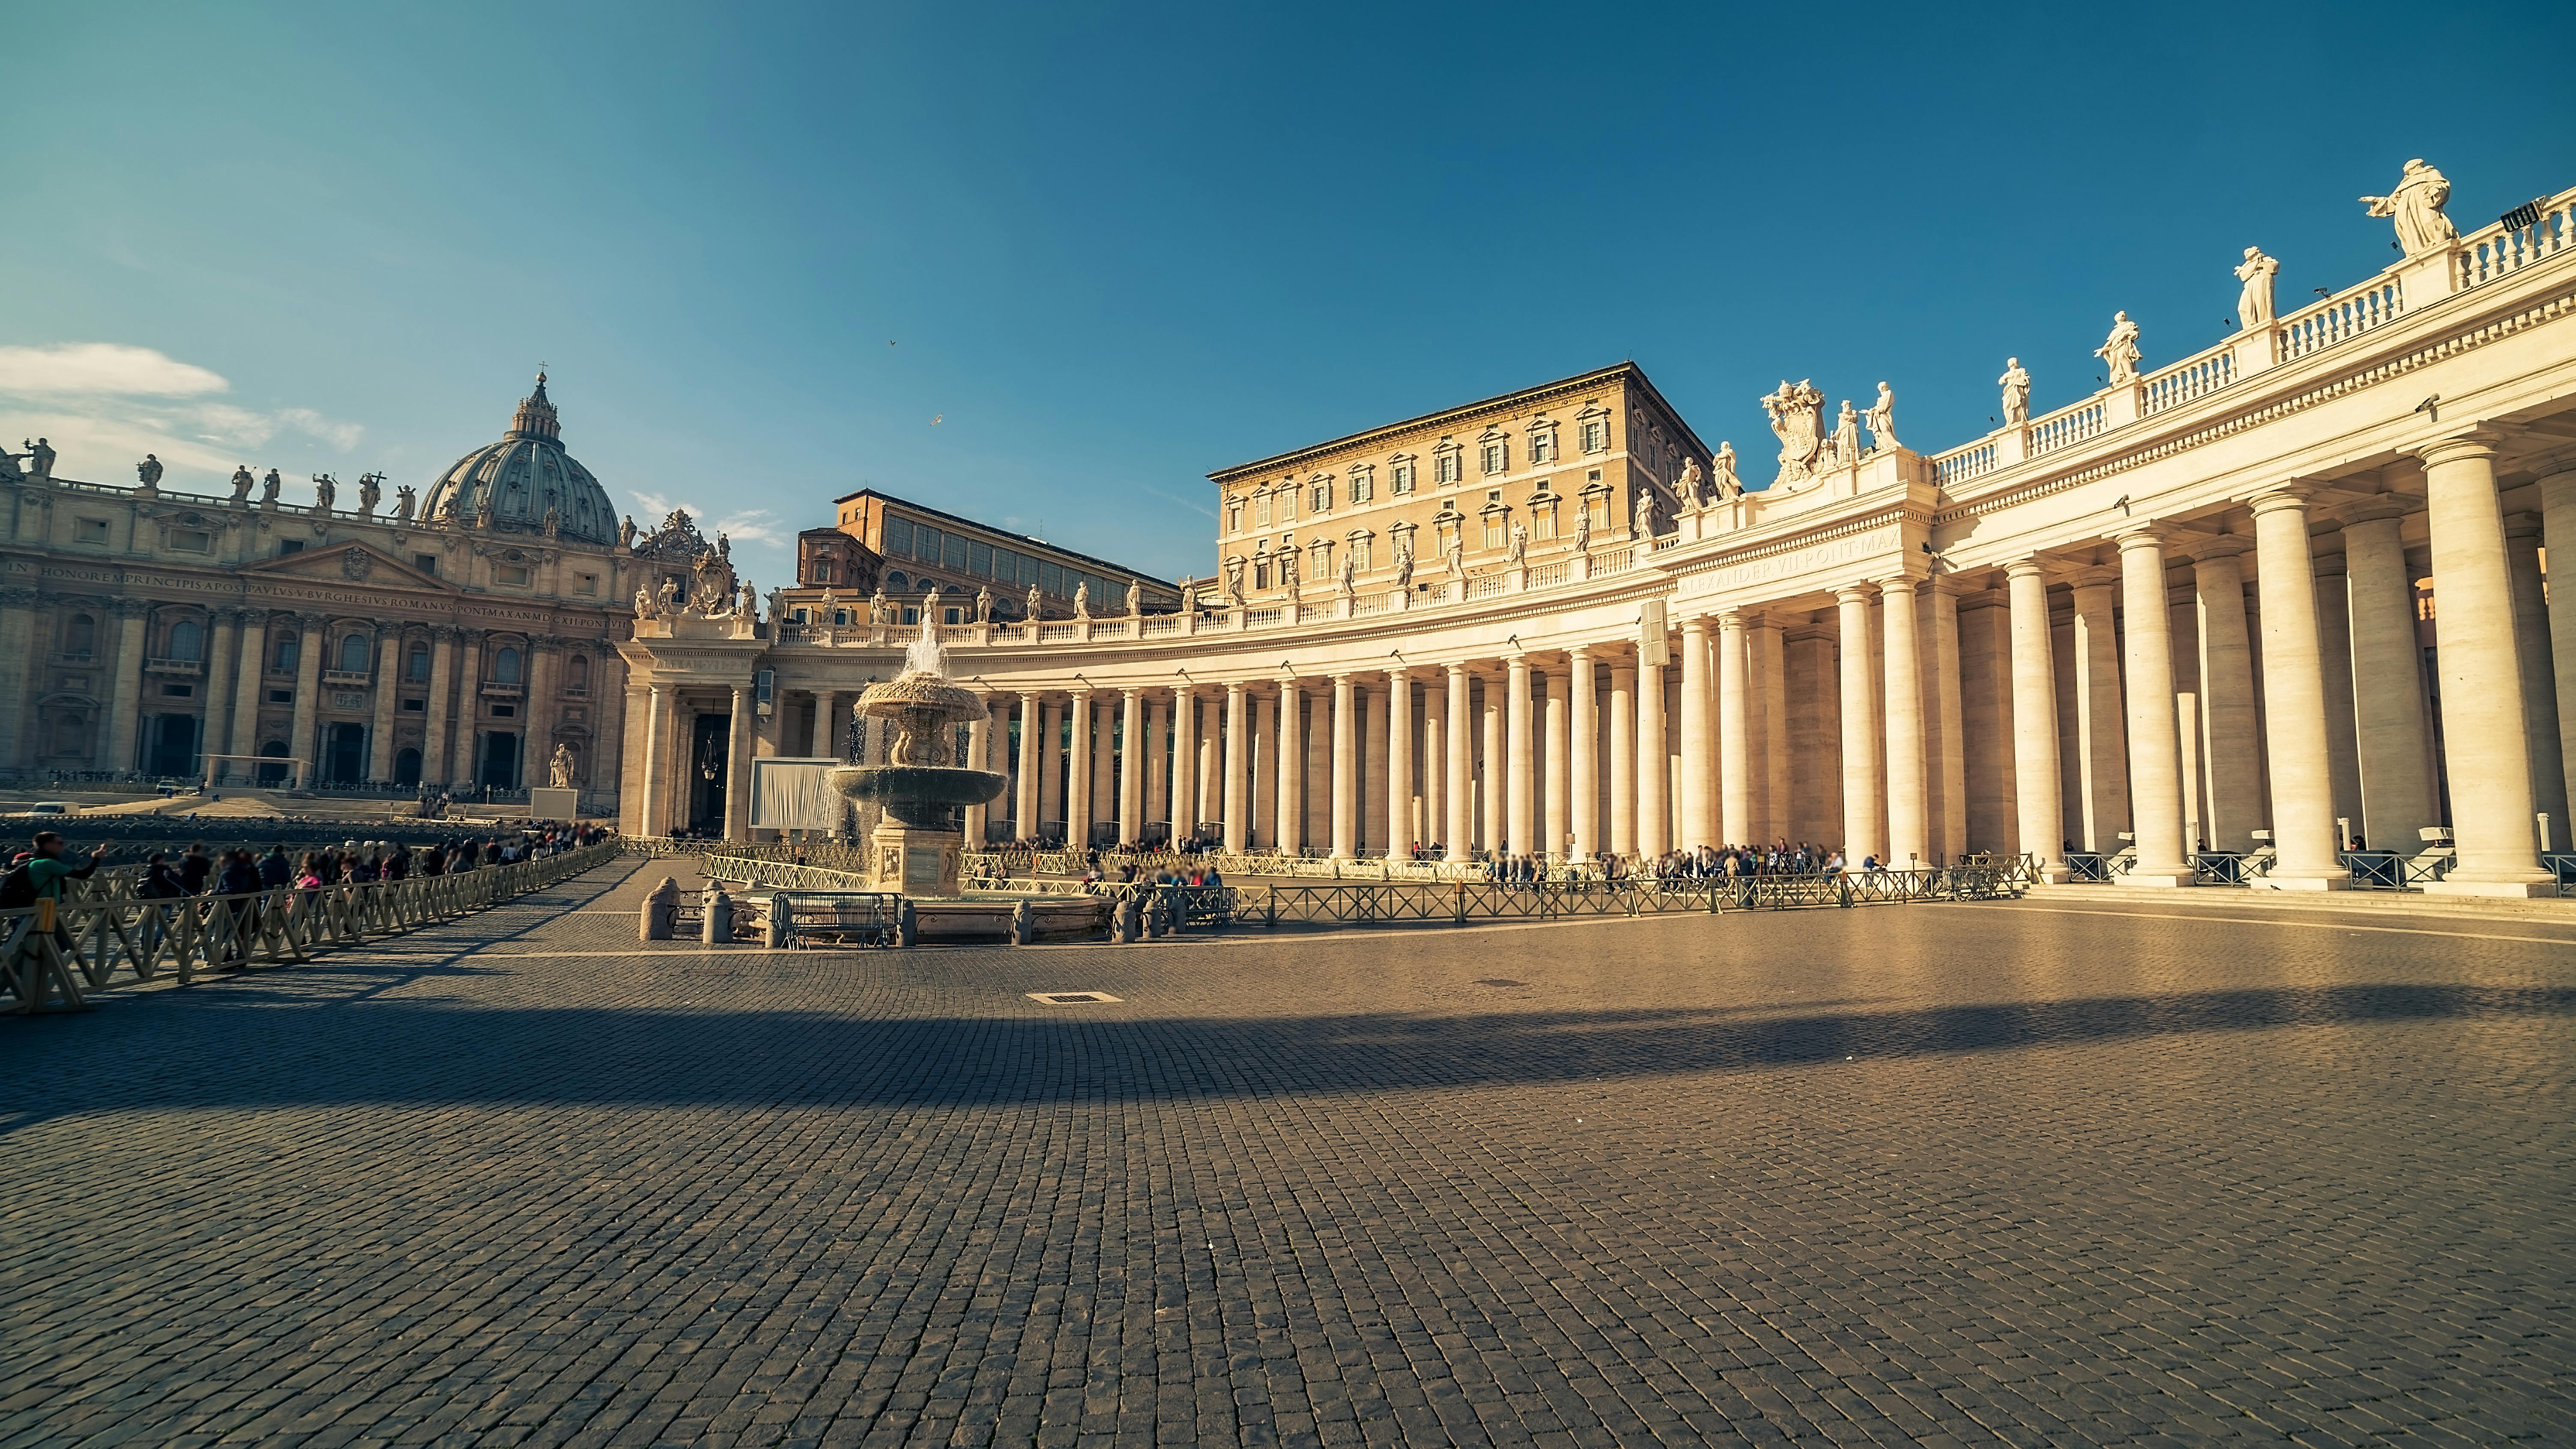 Geführte Tour durch die Vatikanischen Museen und Stadtrundfahrt Rom Hop-on-Hop-off